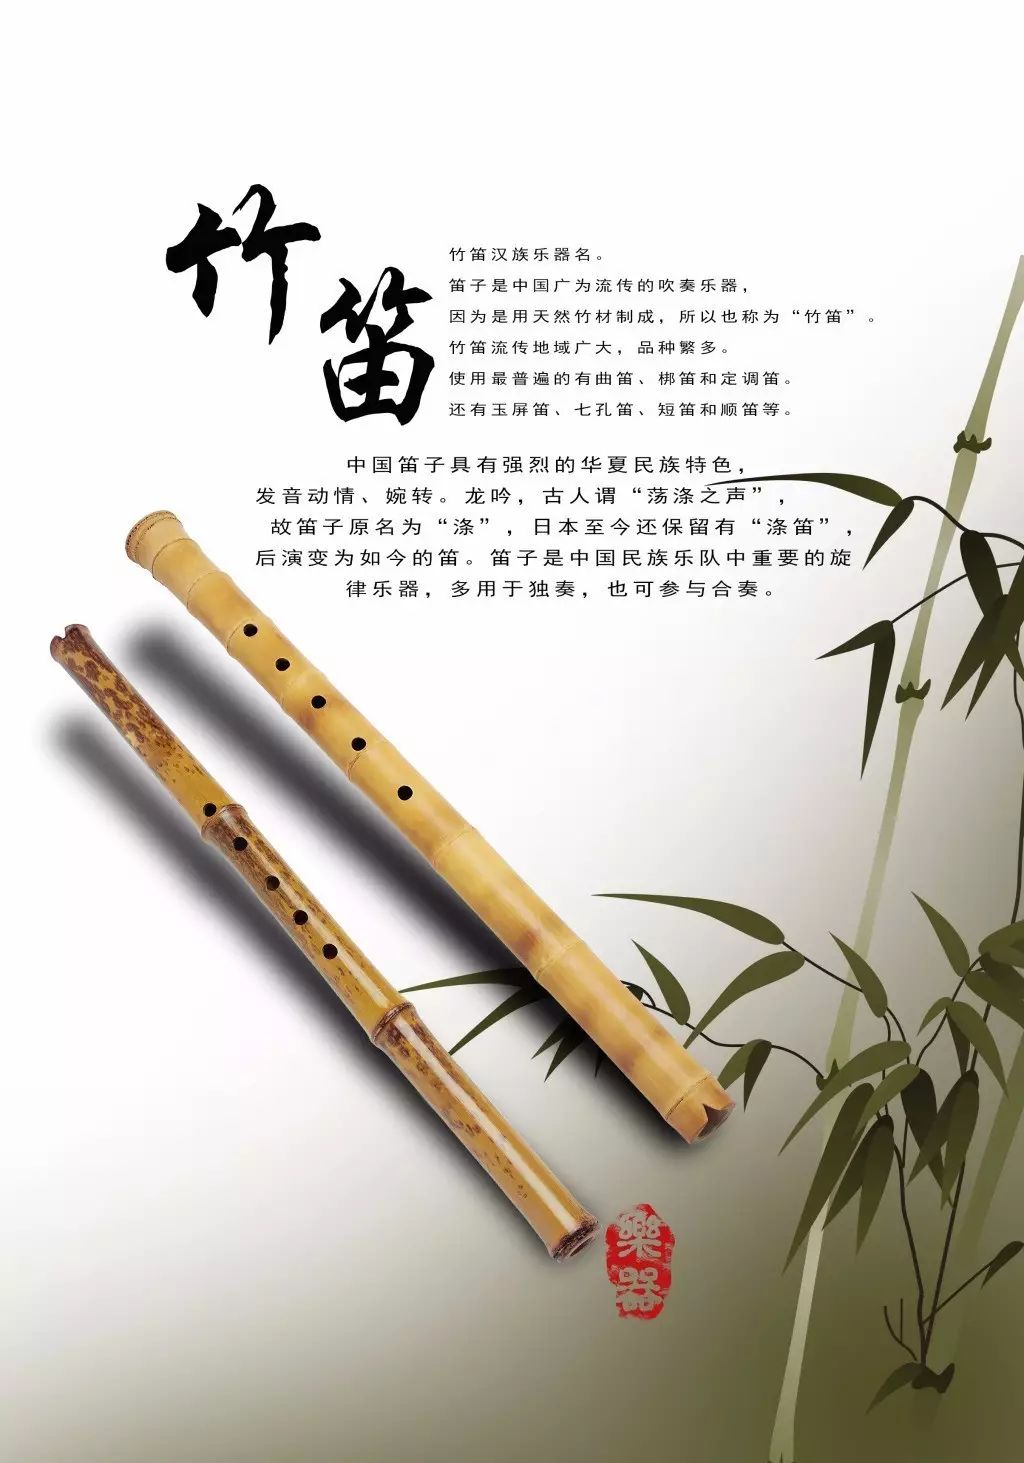 文物介绍—世界上最早的乐器,贾湖骨笛